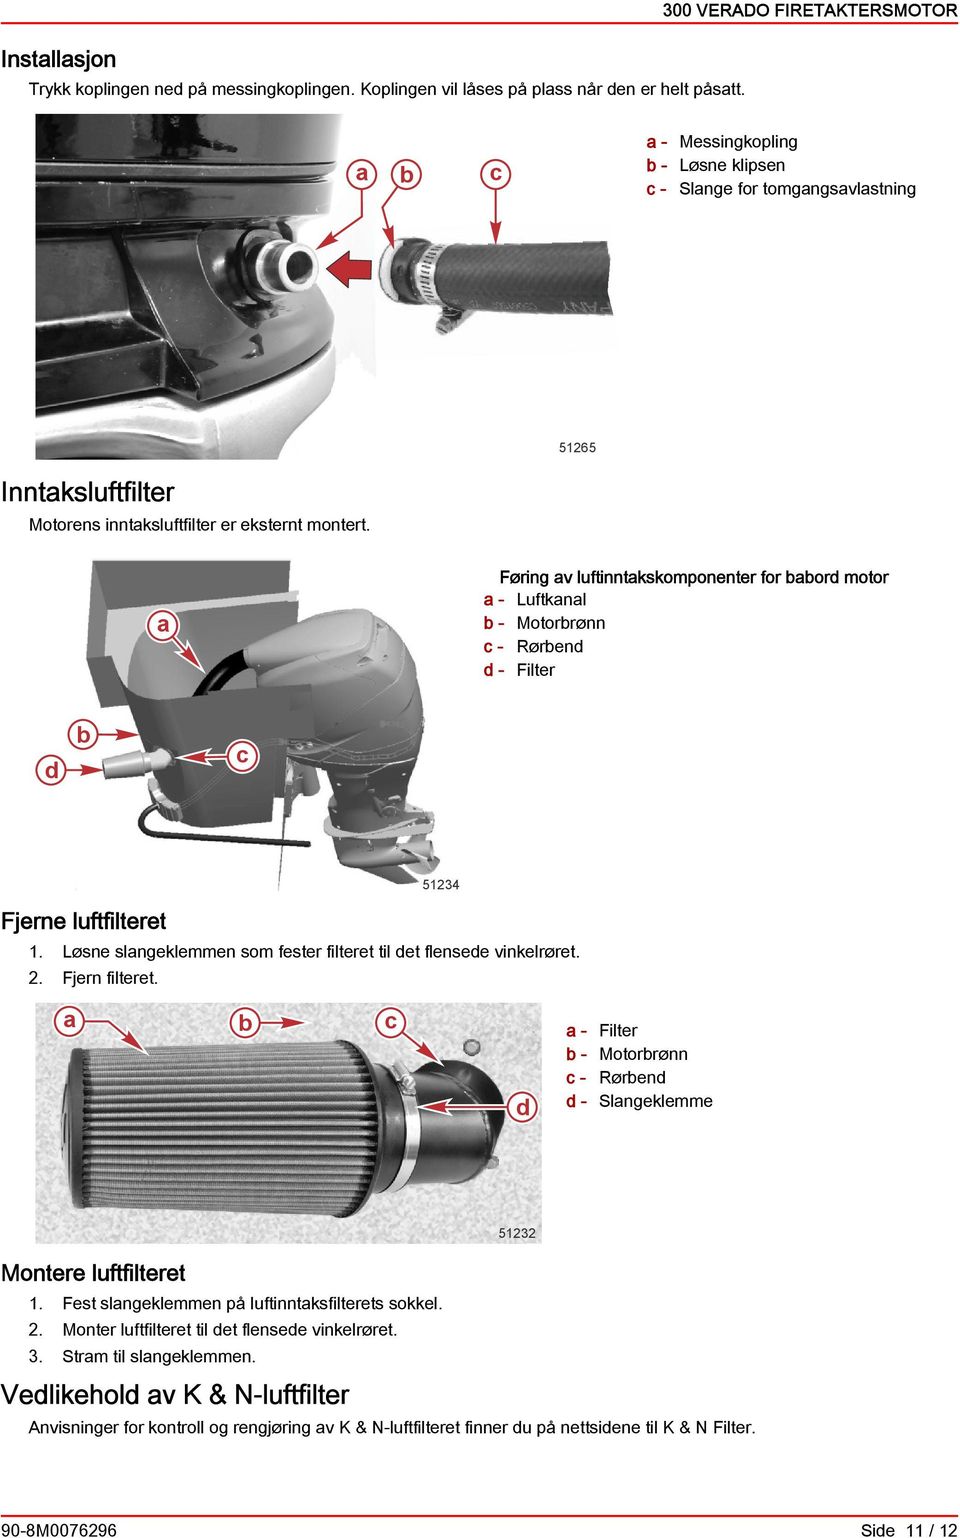 Føring v luftinntkskomponenter for or motor - Luftknl - Motorrønn - Røren - Filter Fjerne luftfilteret 51234 1. Løsne slngeklemmen som fester filteret til et flensee vinkelrøret. 2. Fjern filteret.